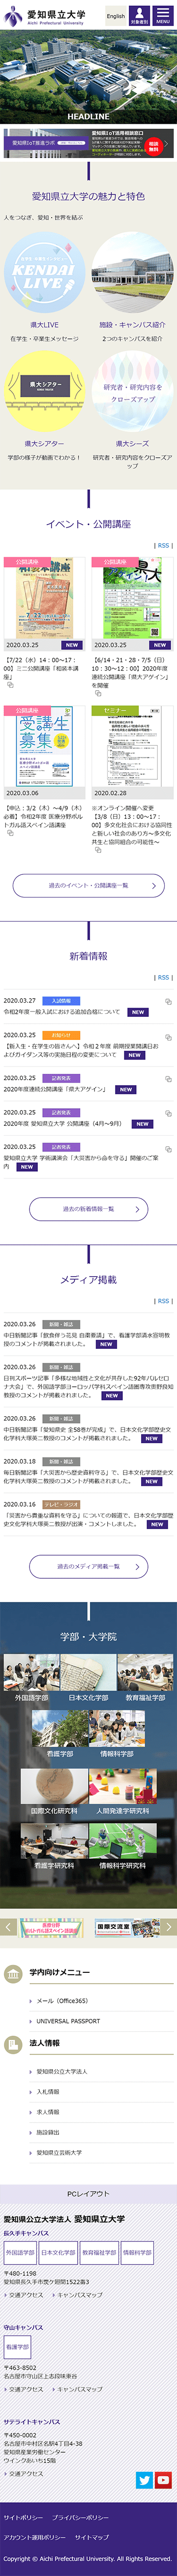 愛知県立大学のホームページ　スマホ版のキャプチャ